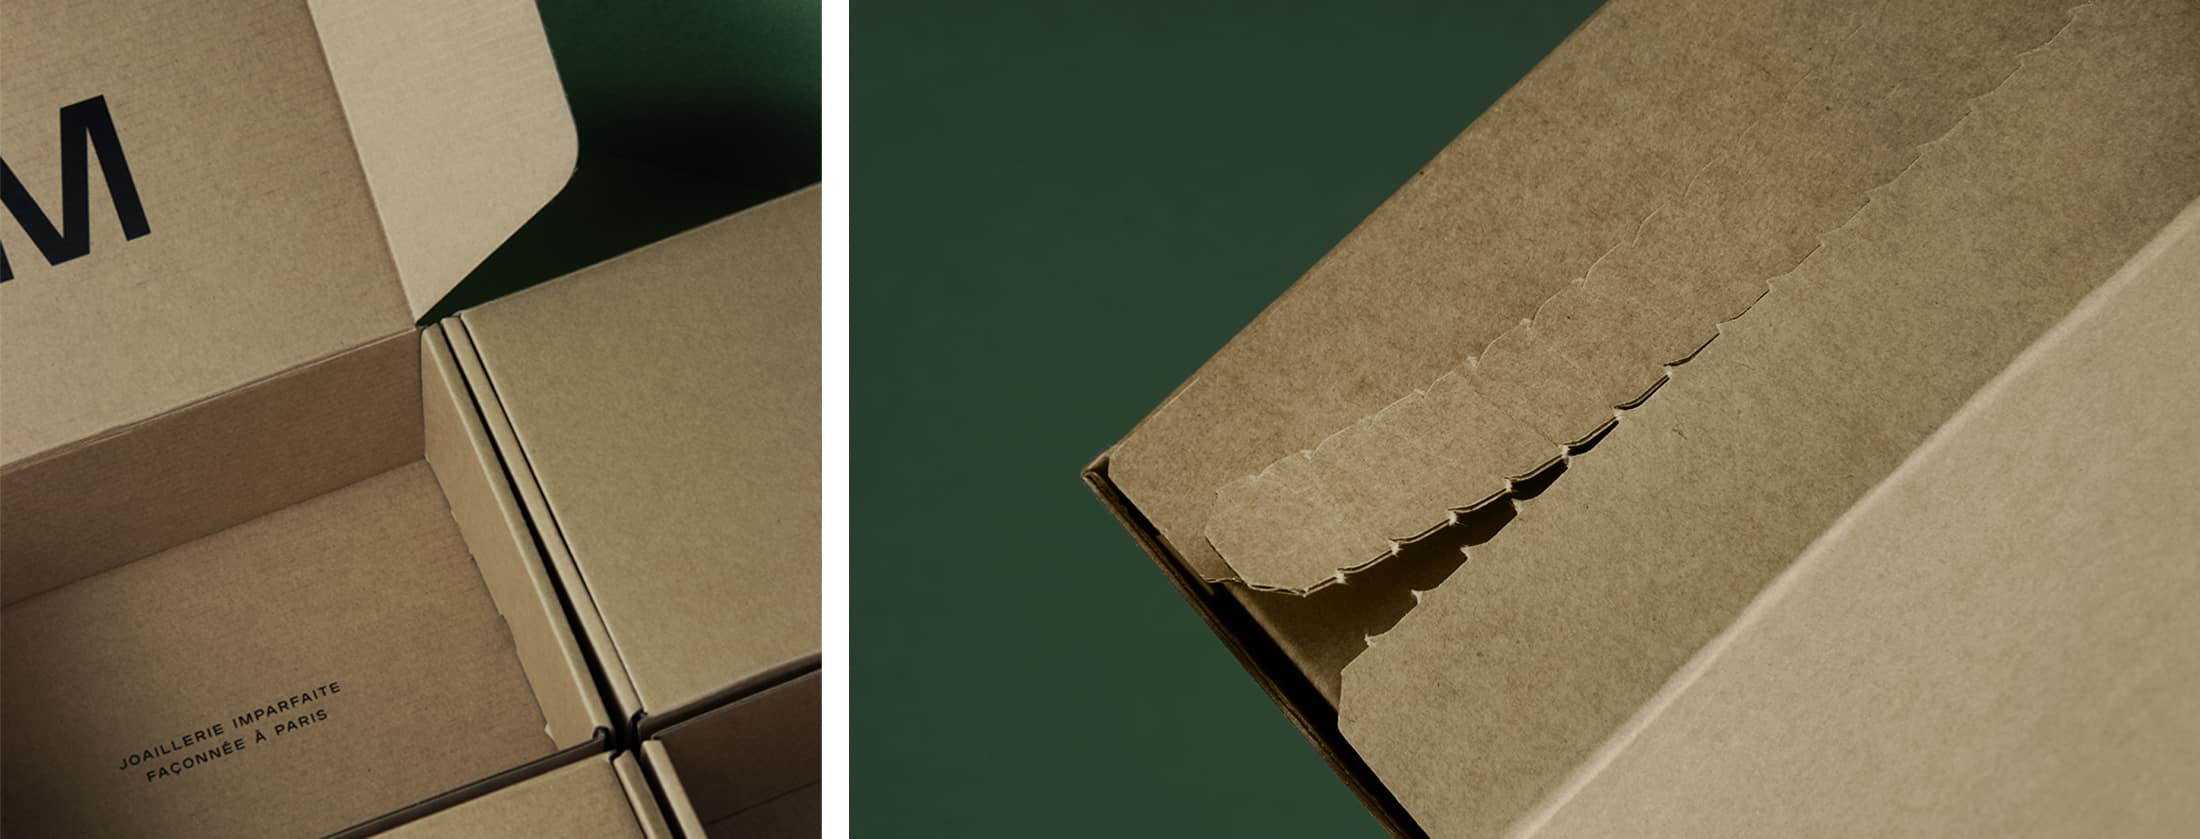 Boite d'expédition en carton ondulée solide et sur-mesure avec bande déchirable pour une expérience d'unboxing